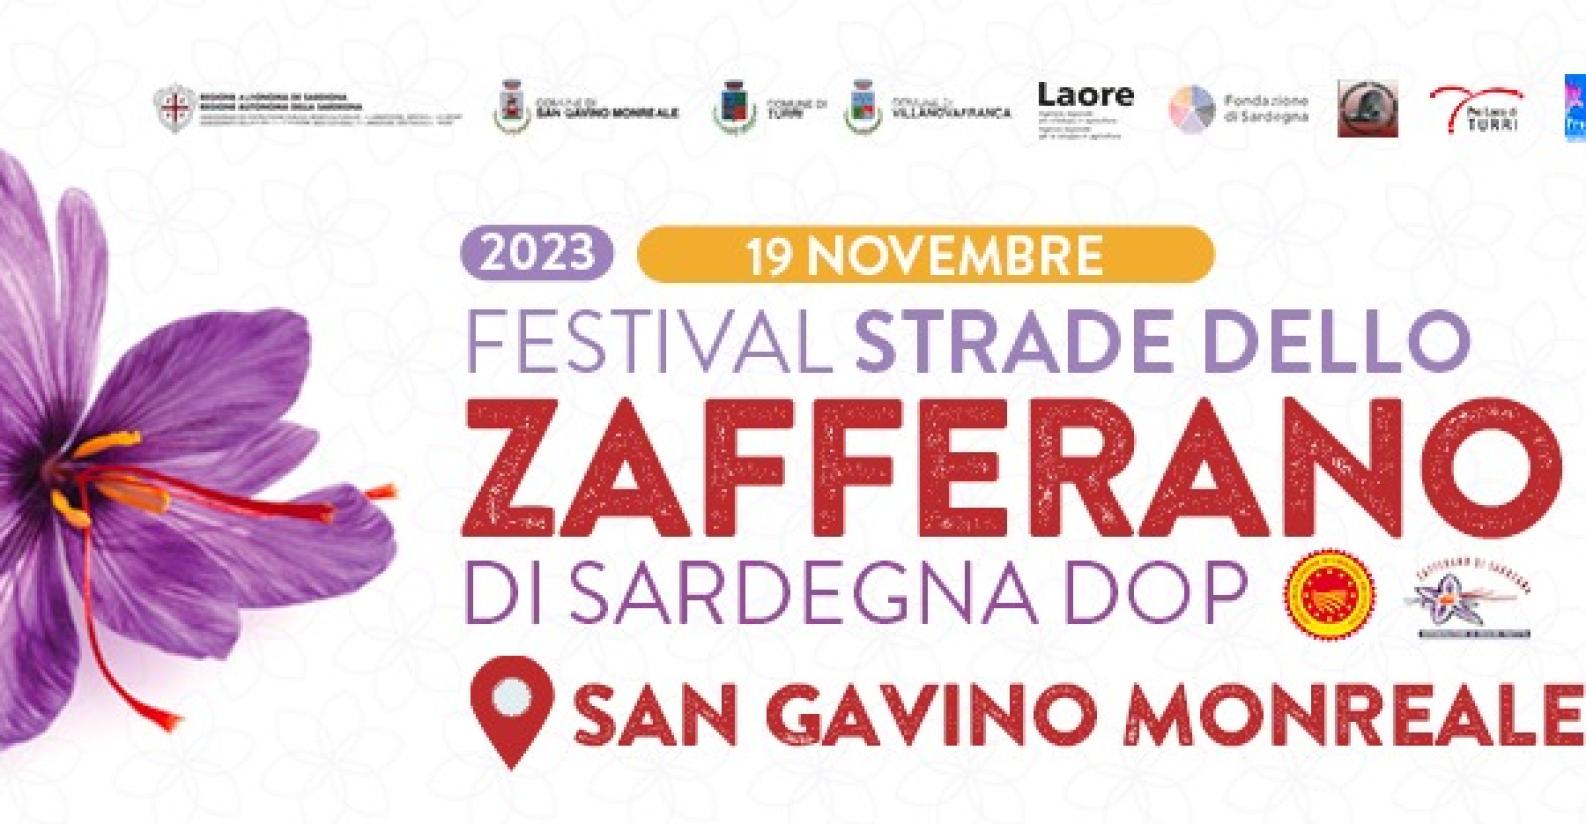 festival_strade_dello_zafferano_di_sardegna_dop_san_gavino_monreale2023